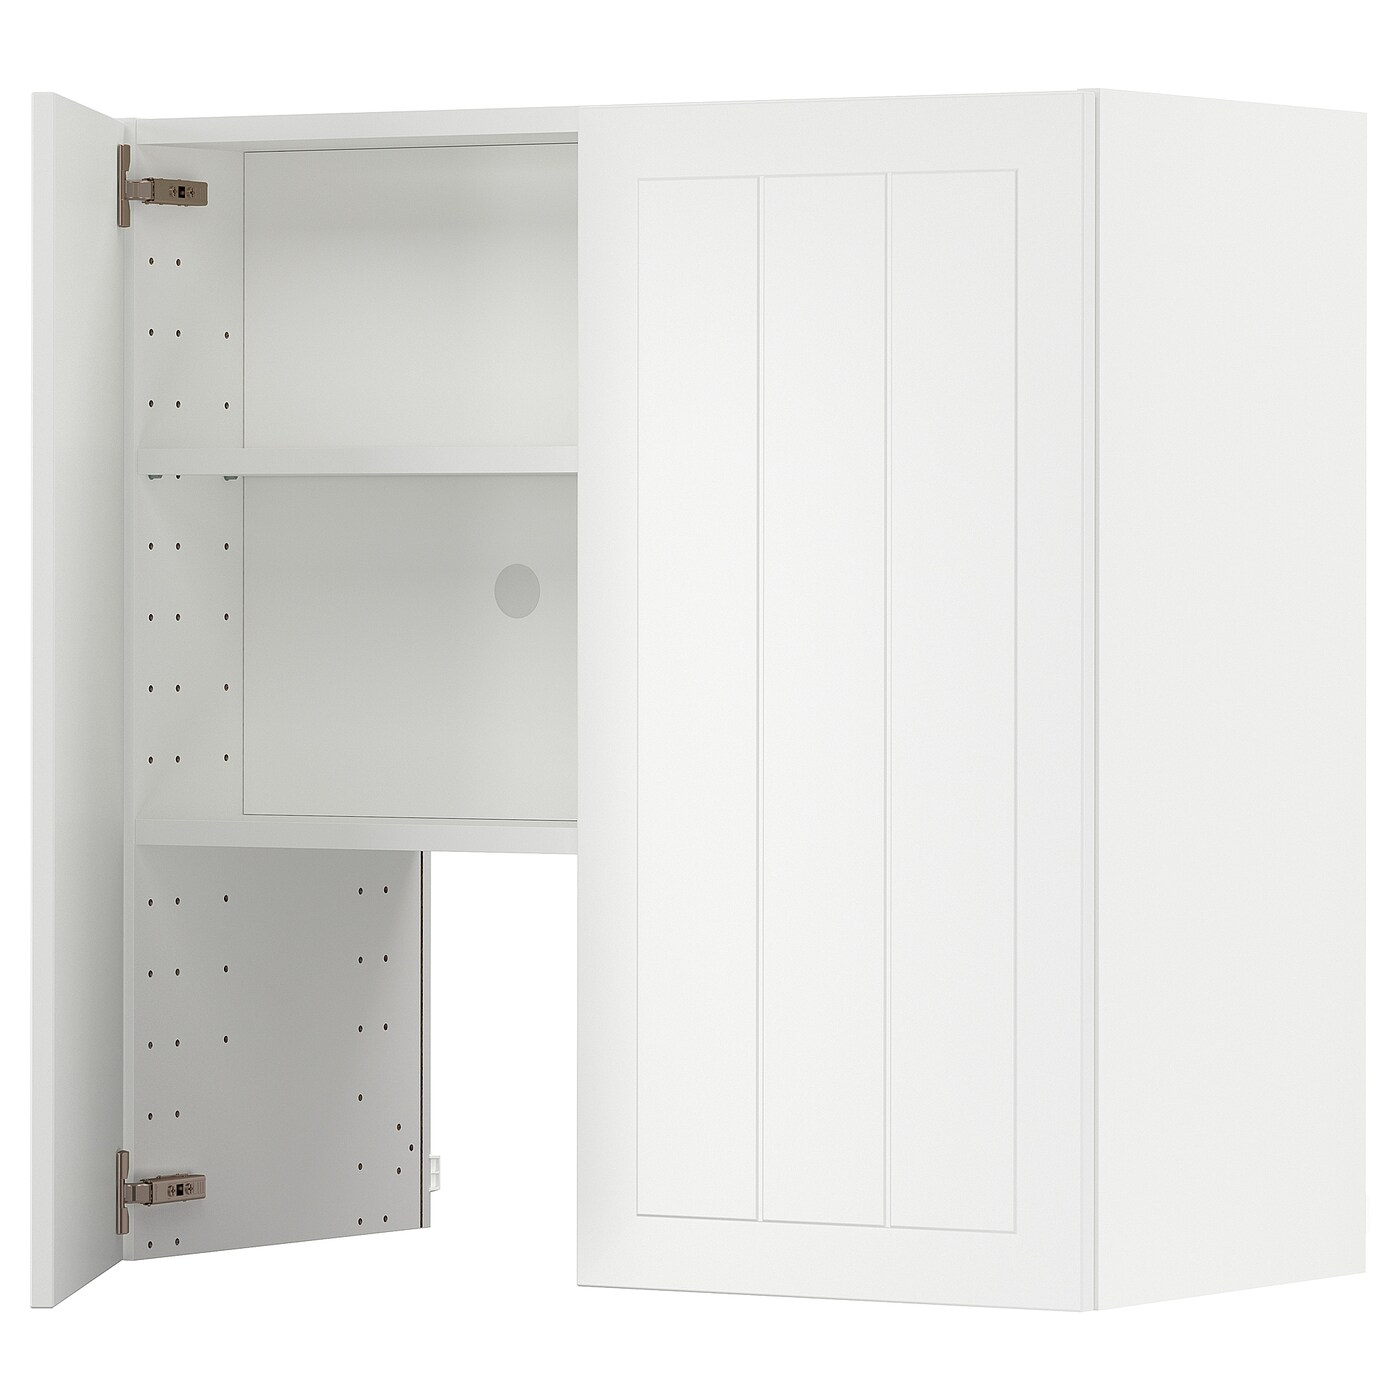 Навесной шкаф с полкой - METOD IKEA/ МЕТОД ИКЕА, 80х80 см, белый